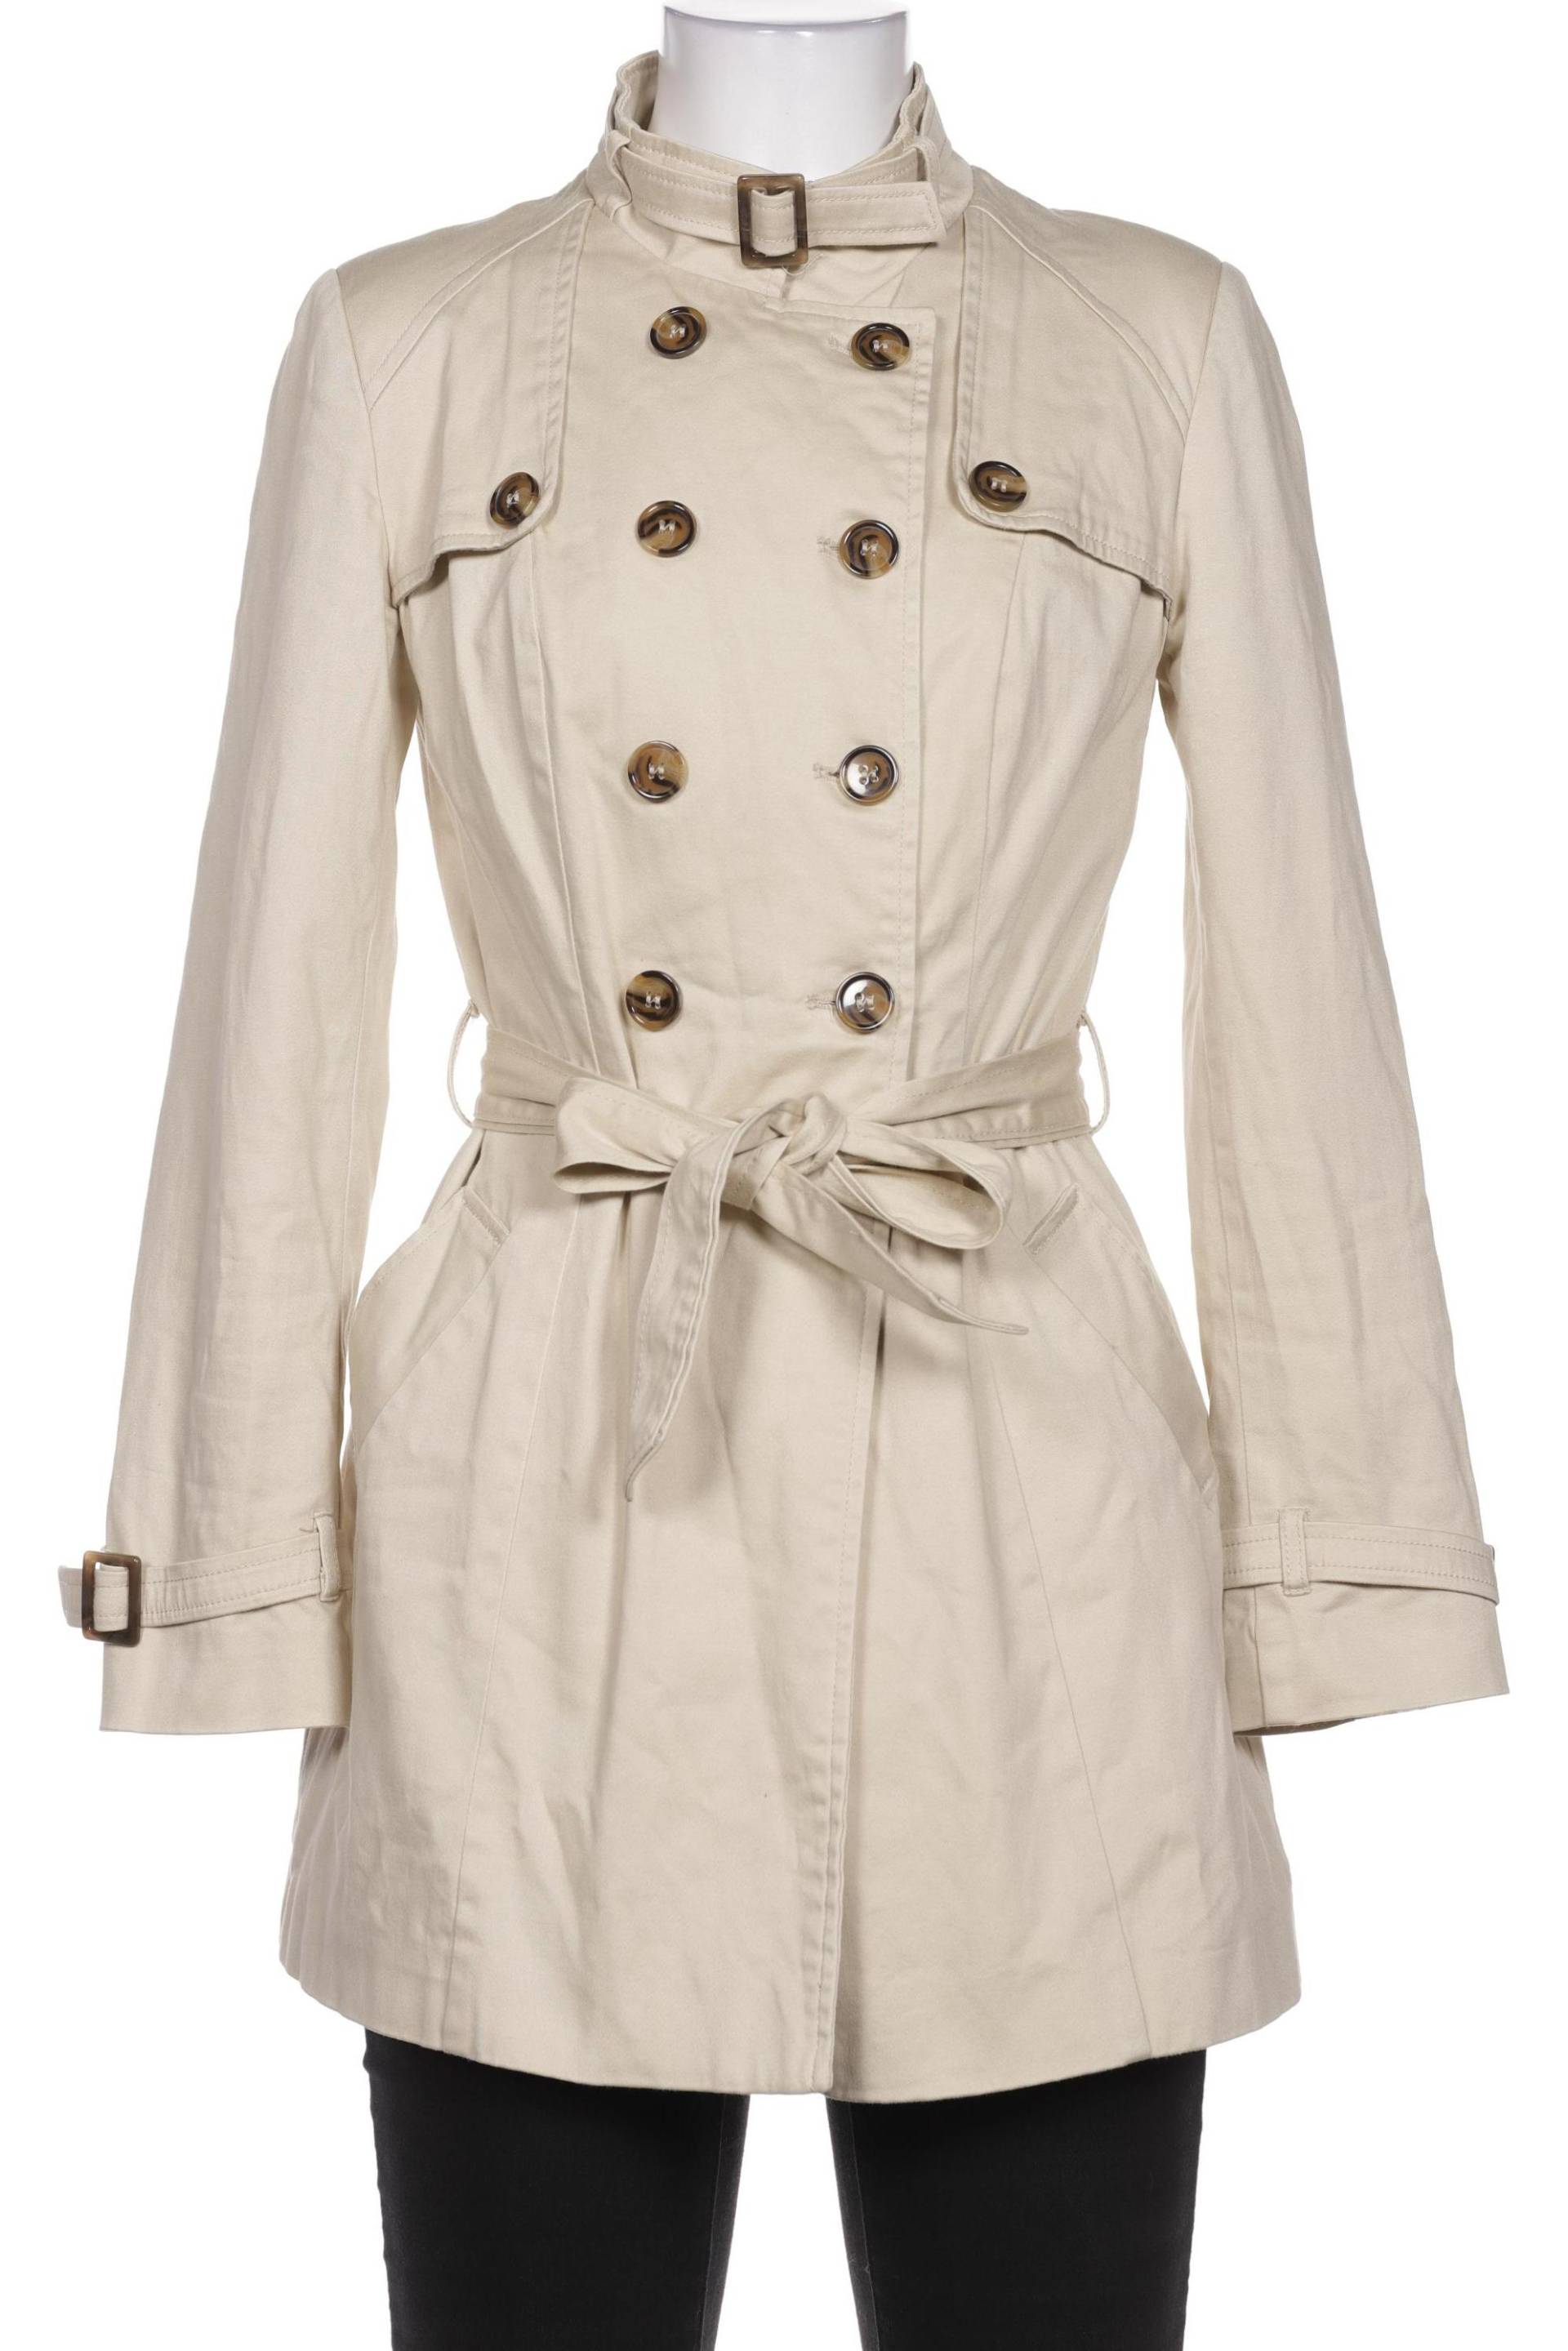 Orsay Damen Mantel, cremeweiß von Orsay